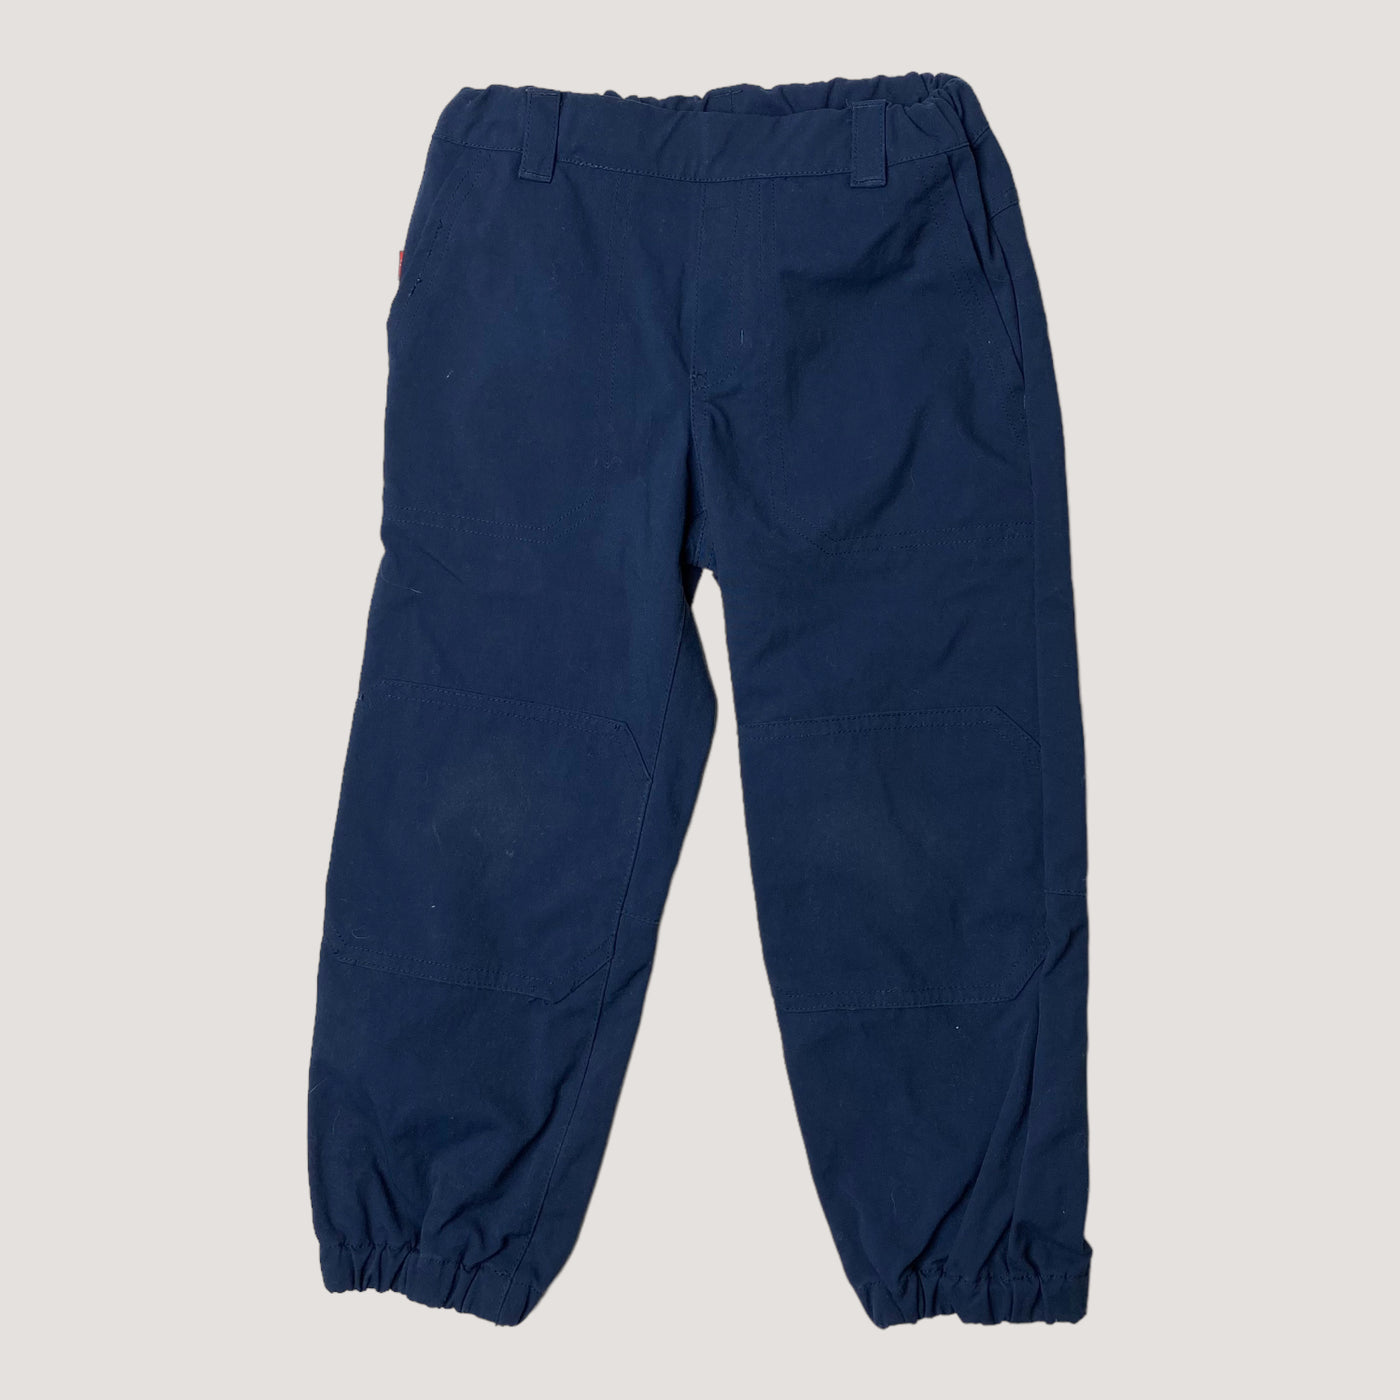 Reima midseason pants, midnight blue | 110cm